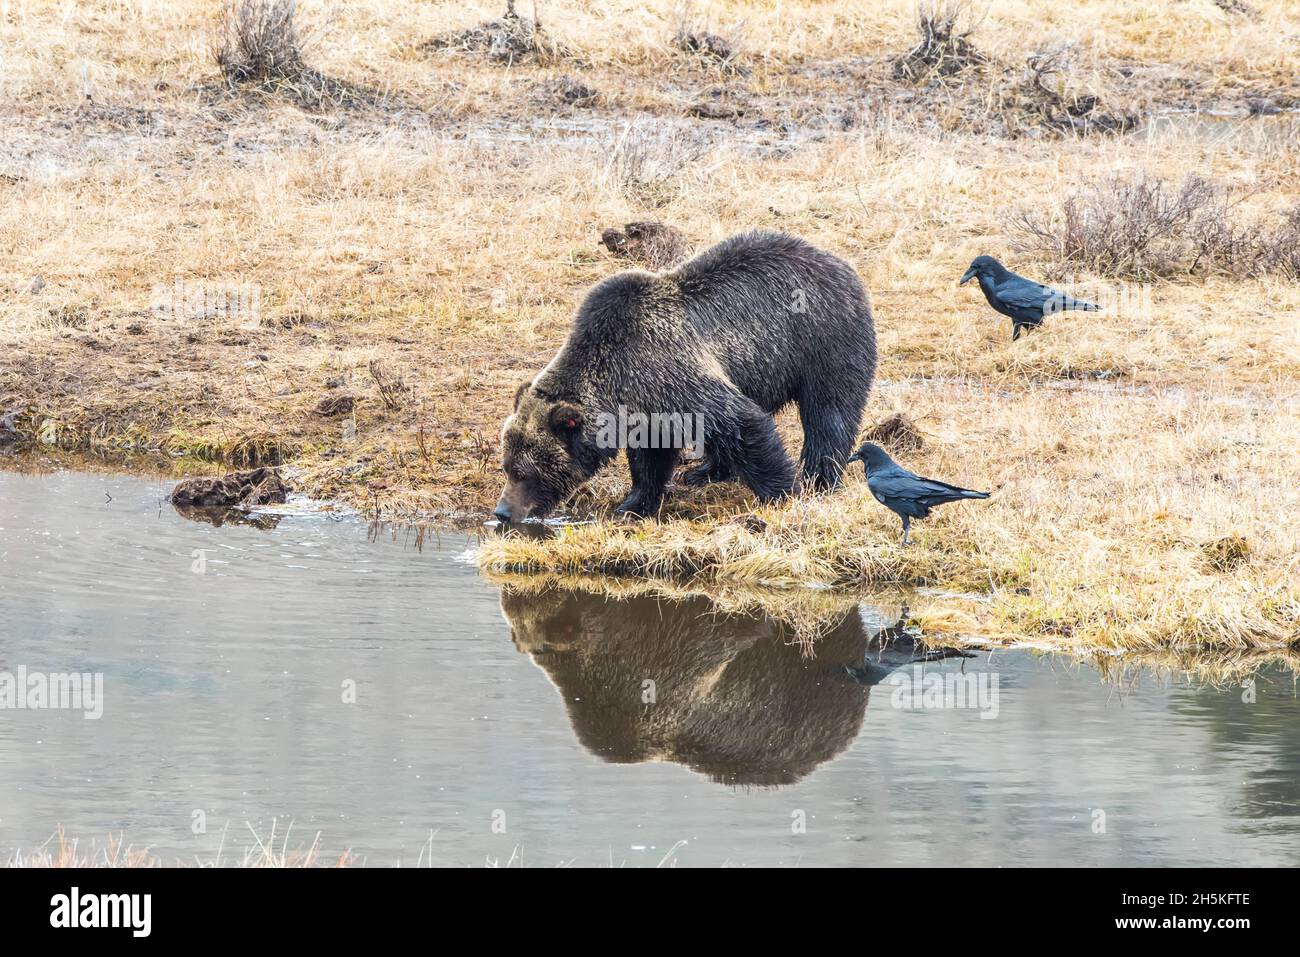 Ours brun (Ursus arctos) debout sur une côte herbeuse recouverte de gel eau potable après s'être nourris sur une carcasse de bison avec des corbeaux (Corvus corax) stand... Banque D'Images